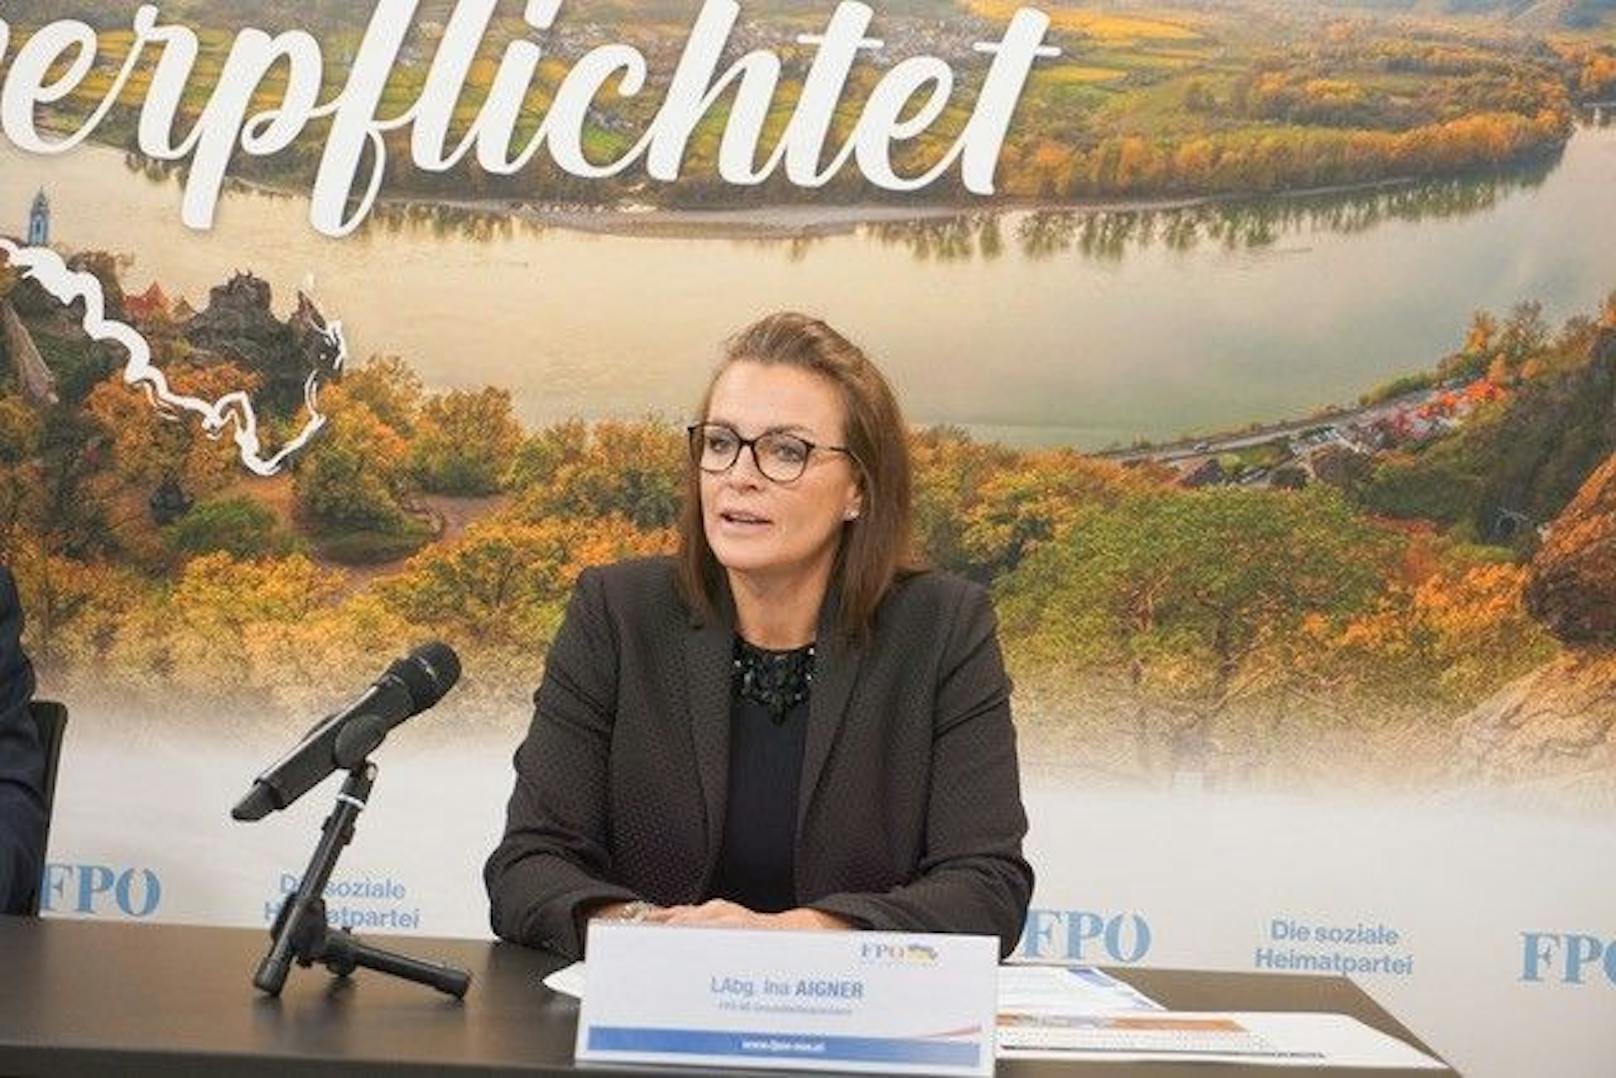 FPÖ-Gesundheitssprecherin und Landtagsabgeordnete Ina Aigner kritisiert das Stelleninserat vom Land NÖ.